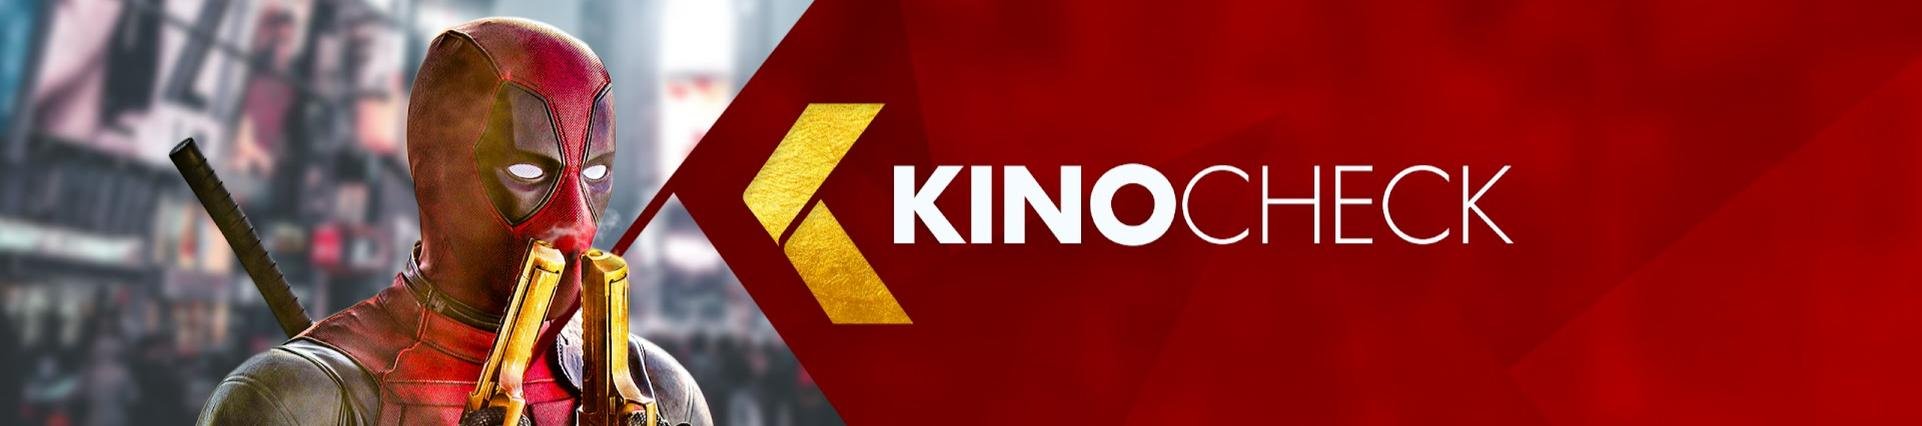 KinoCheck.com